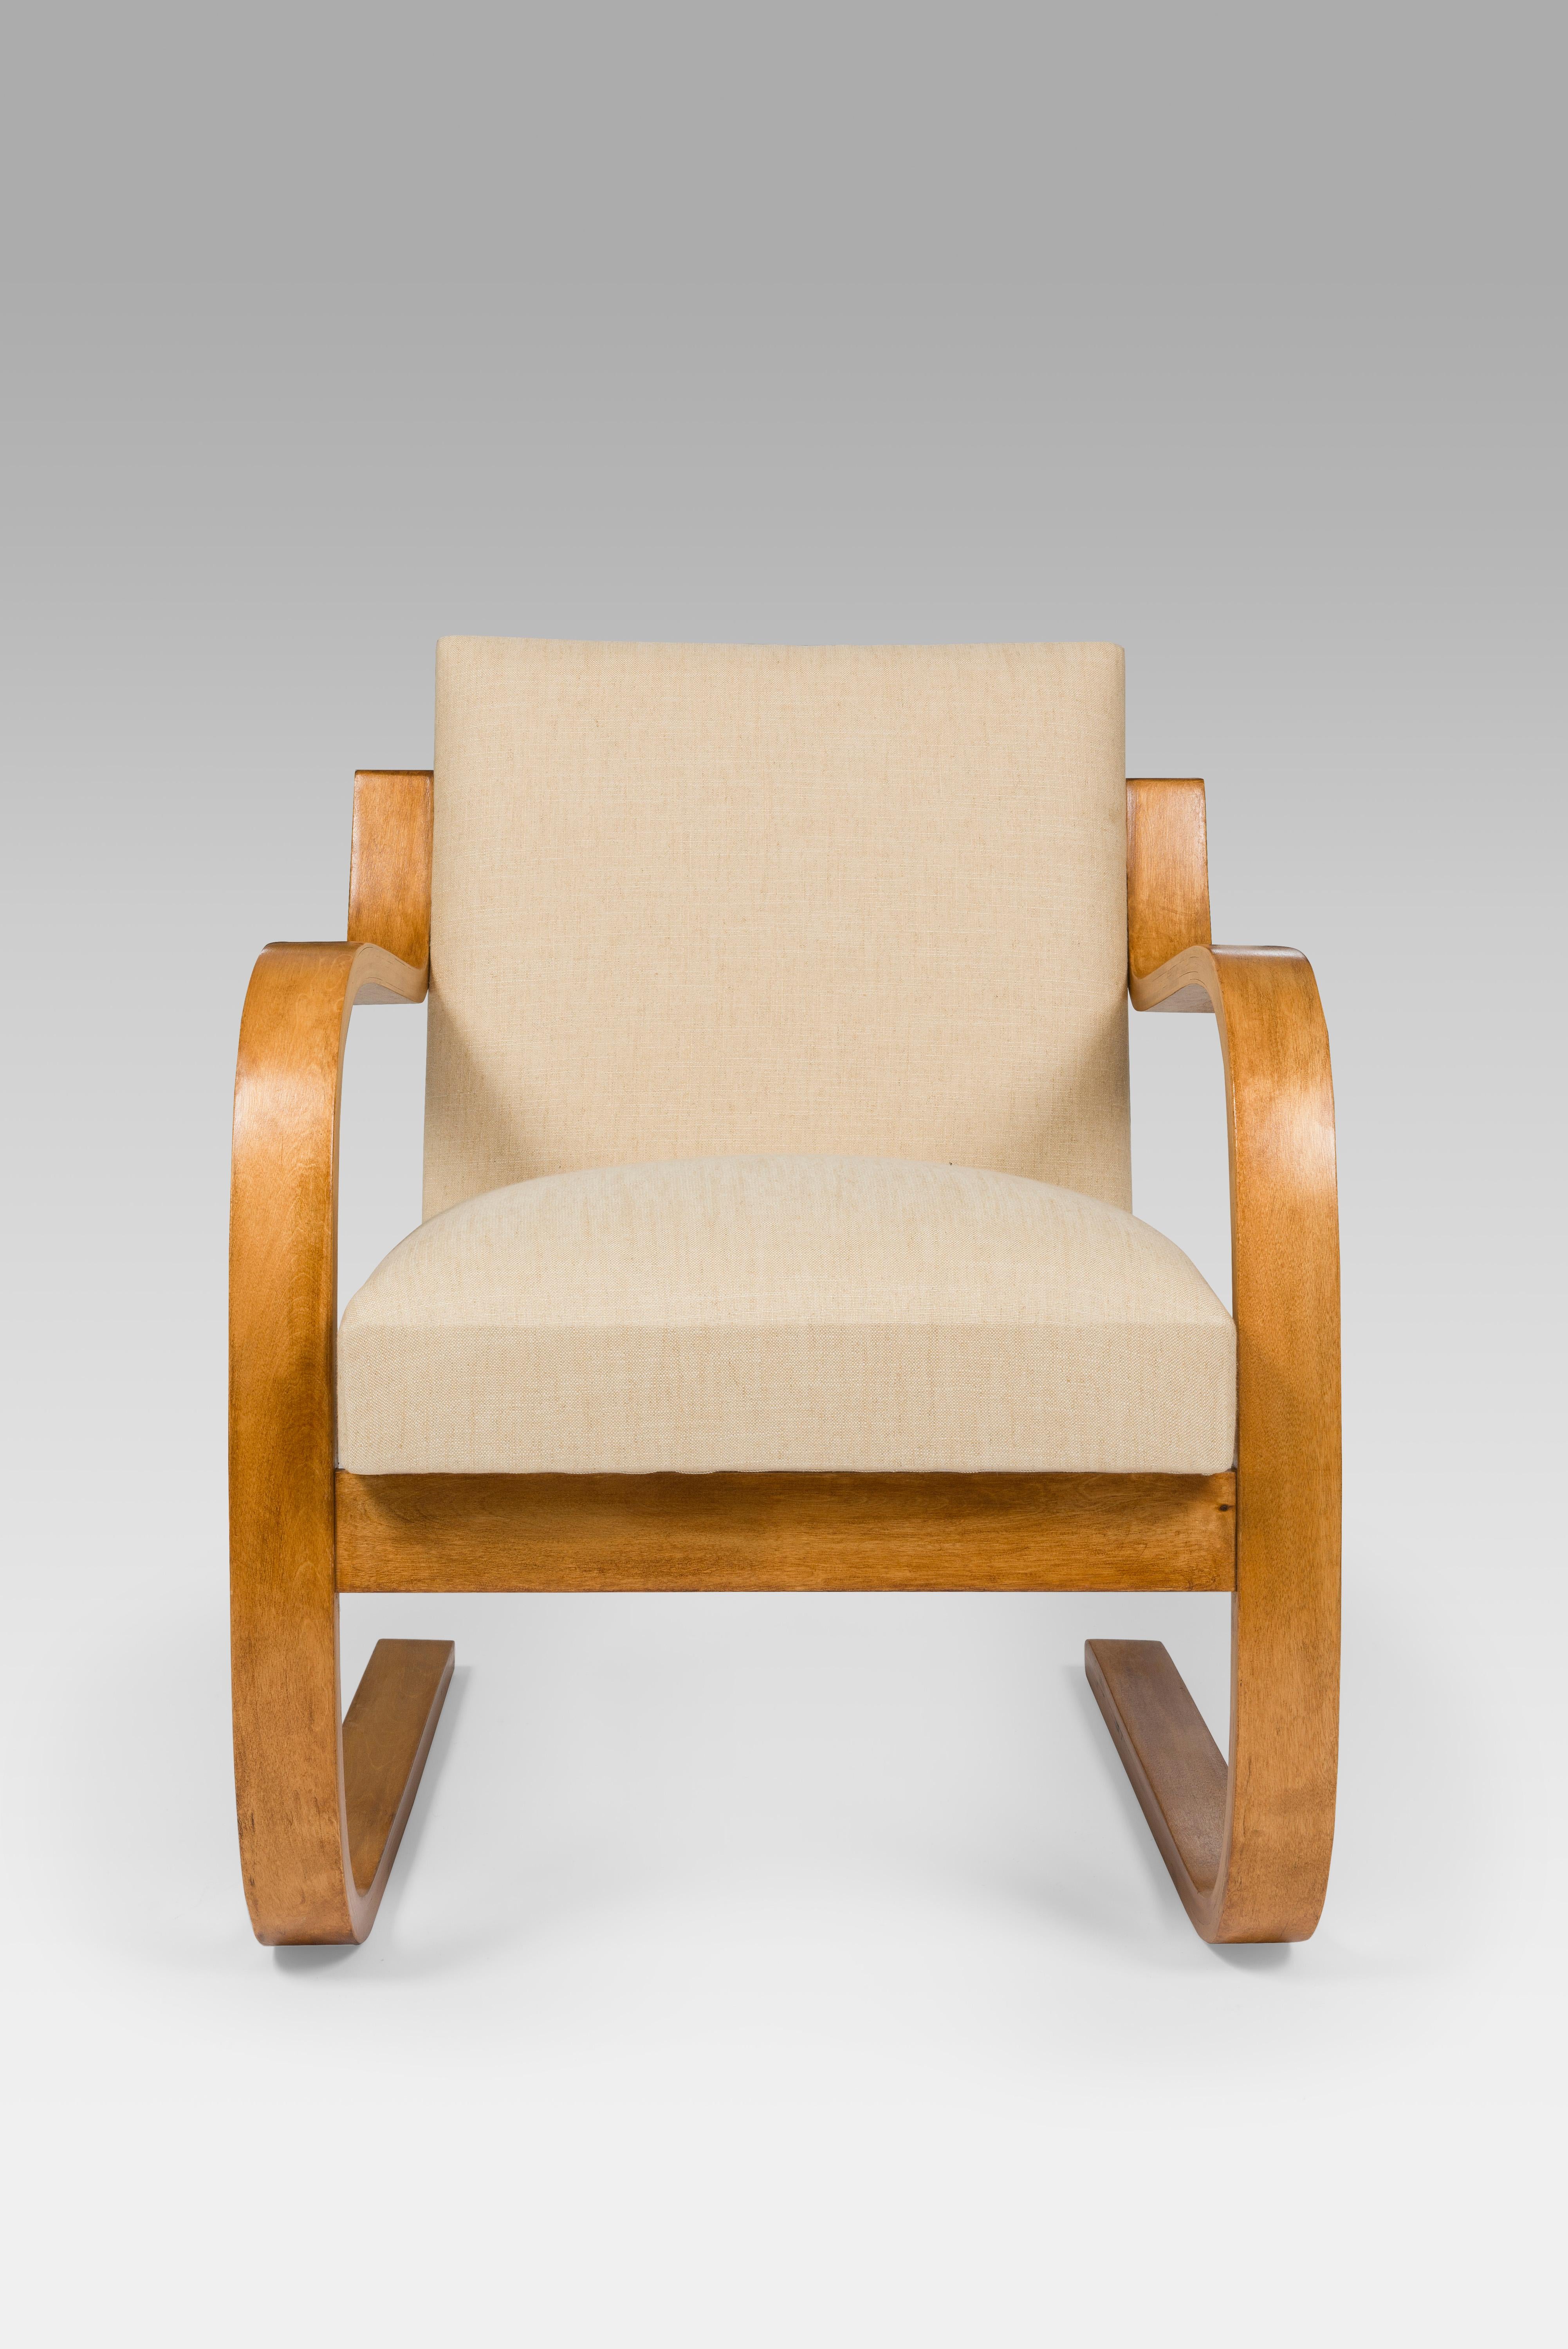 Chaise de salon Alvar Aalto Model 402 originale des années 1930 avec tissu crème blanc cassé retapissé. 

L'une des créations les plus remarquables d'Aalto est le 